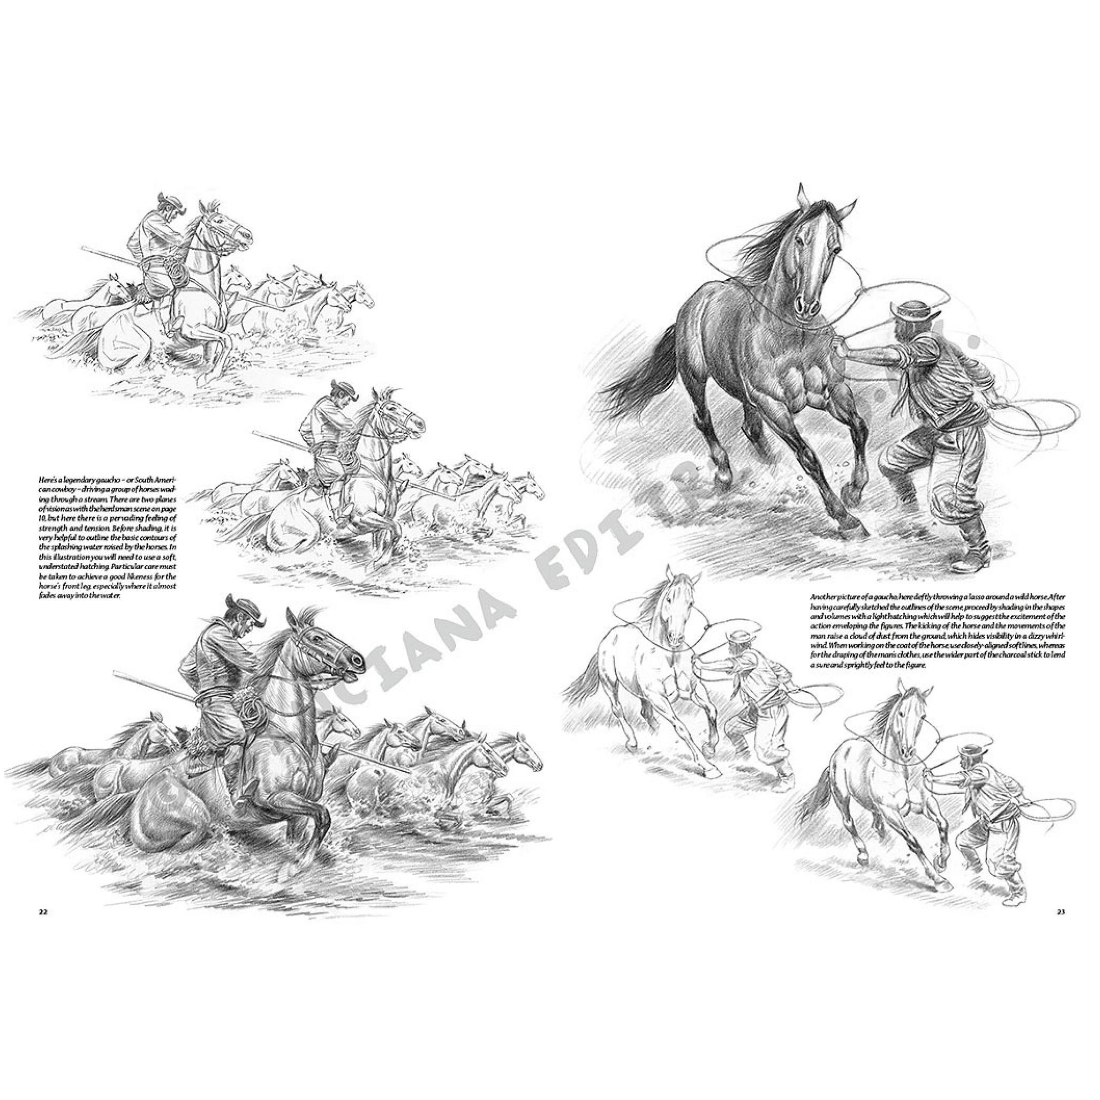 Livro Coleção Leonardo Nº 11 Cavalos e Cavaleiros edições vinciana